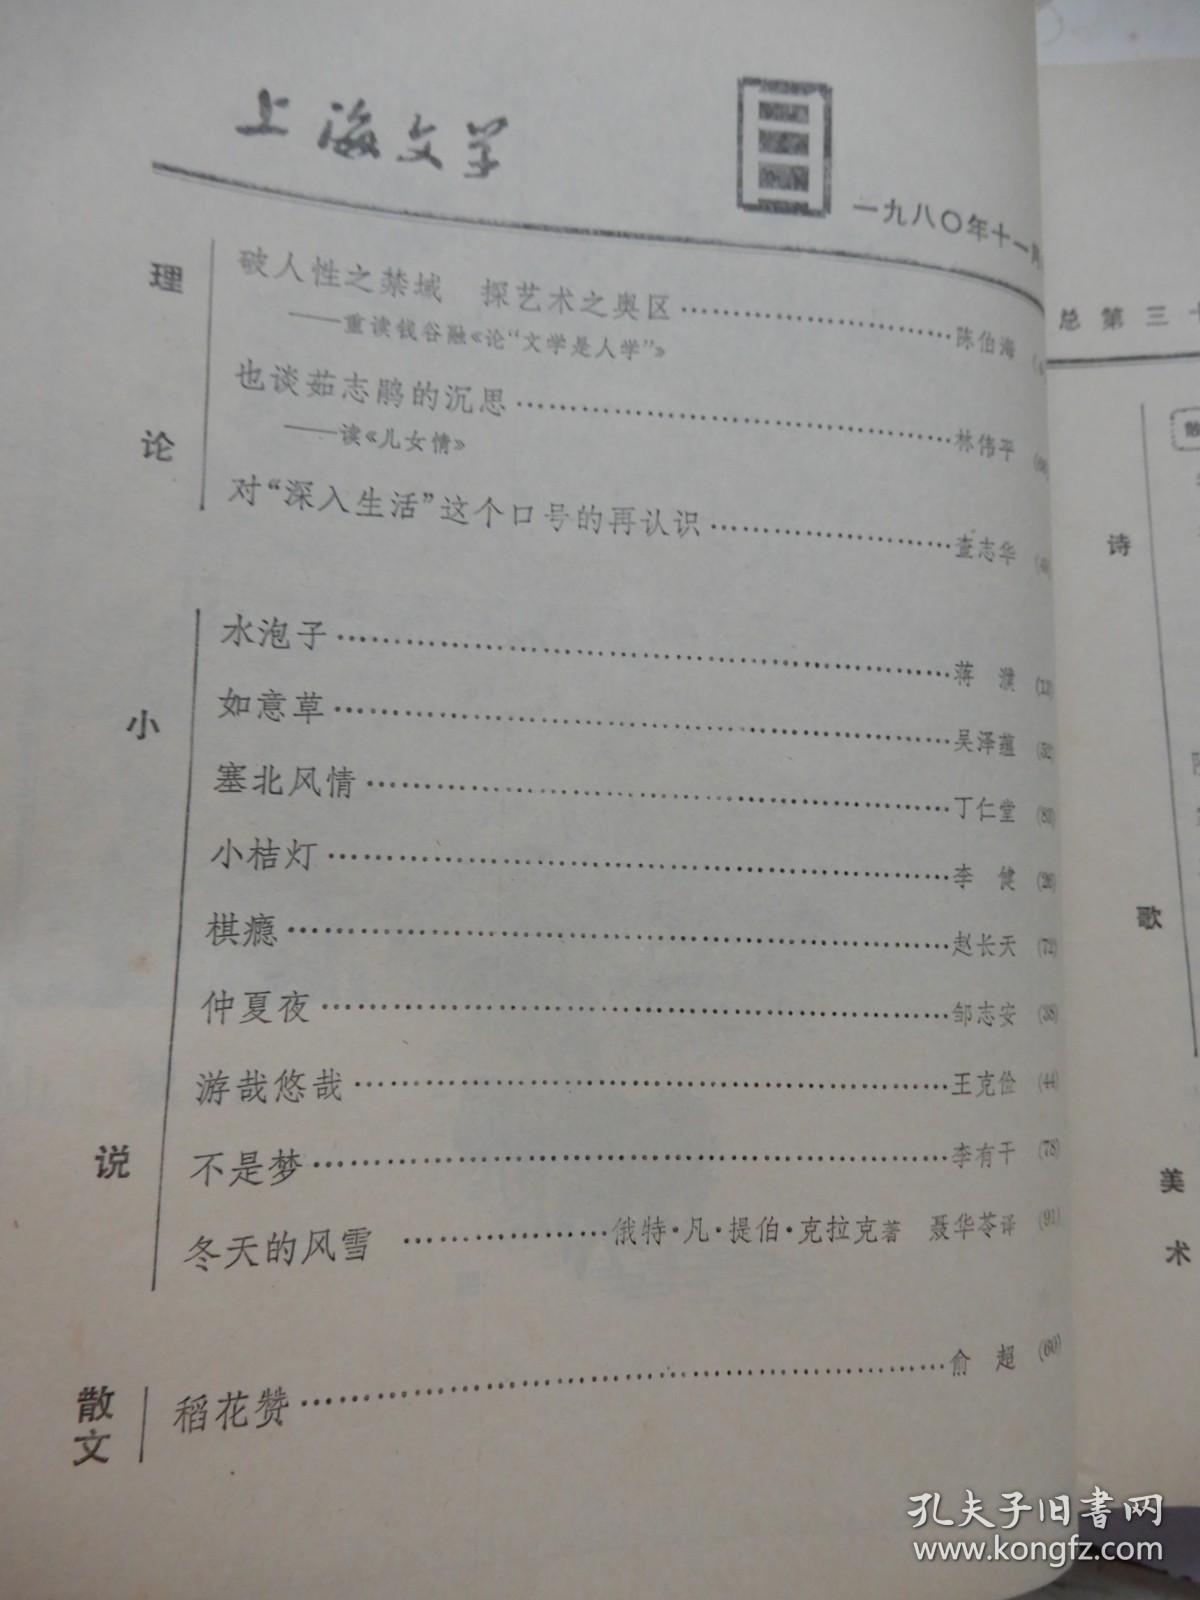 上海文学1980年11期